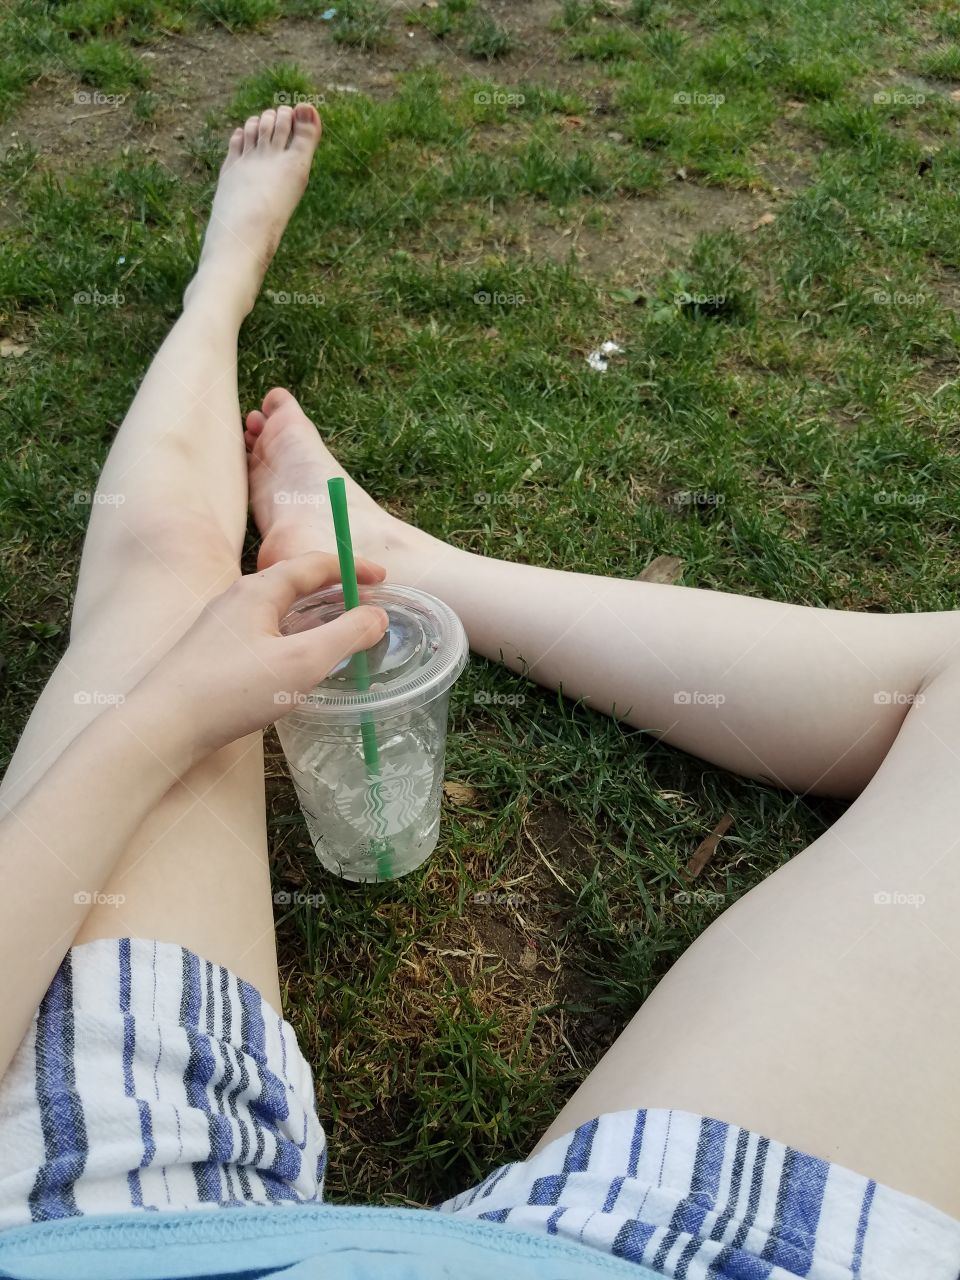 Starbucks at the park